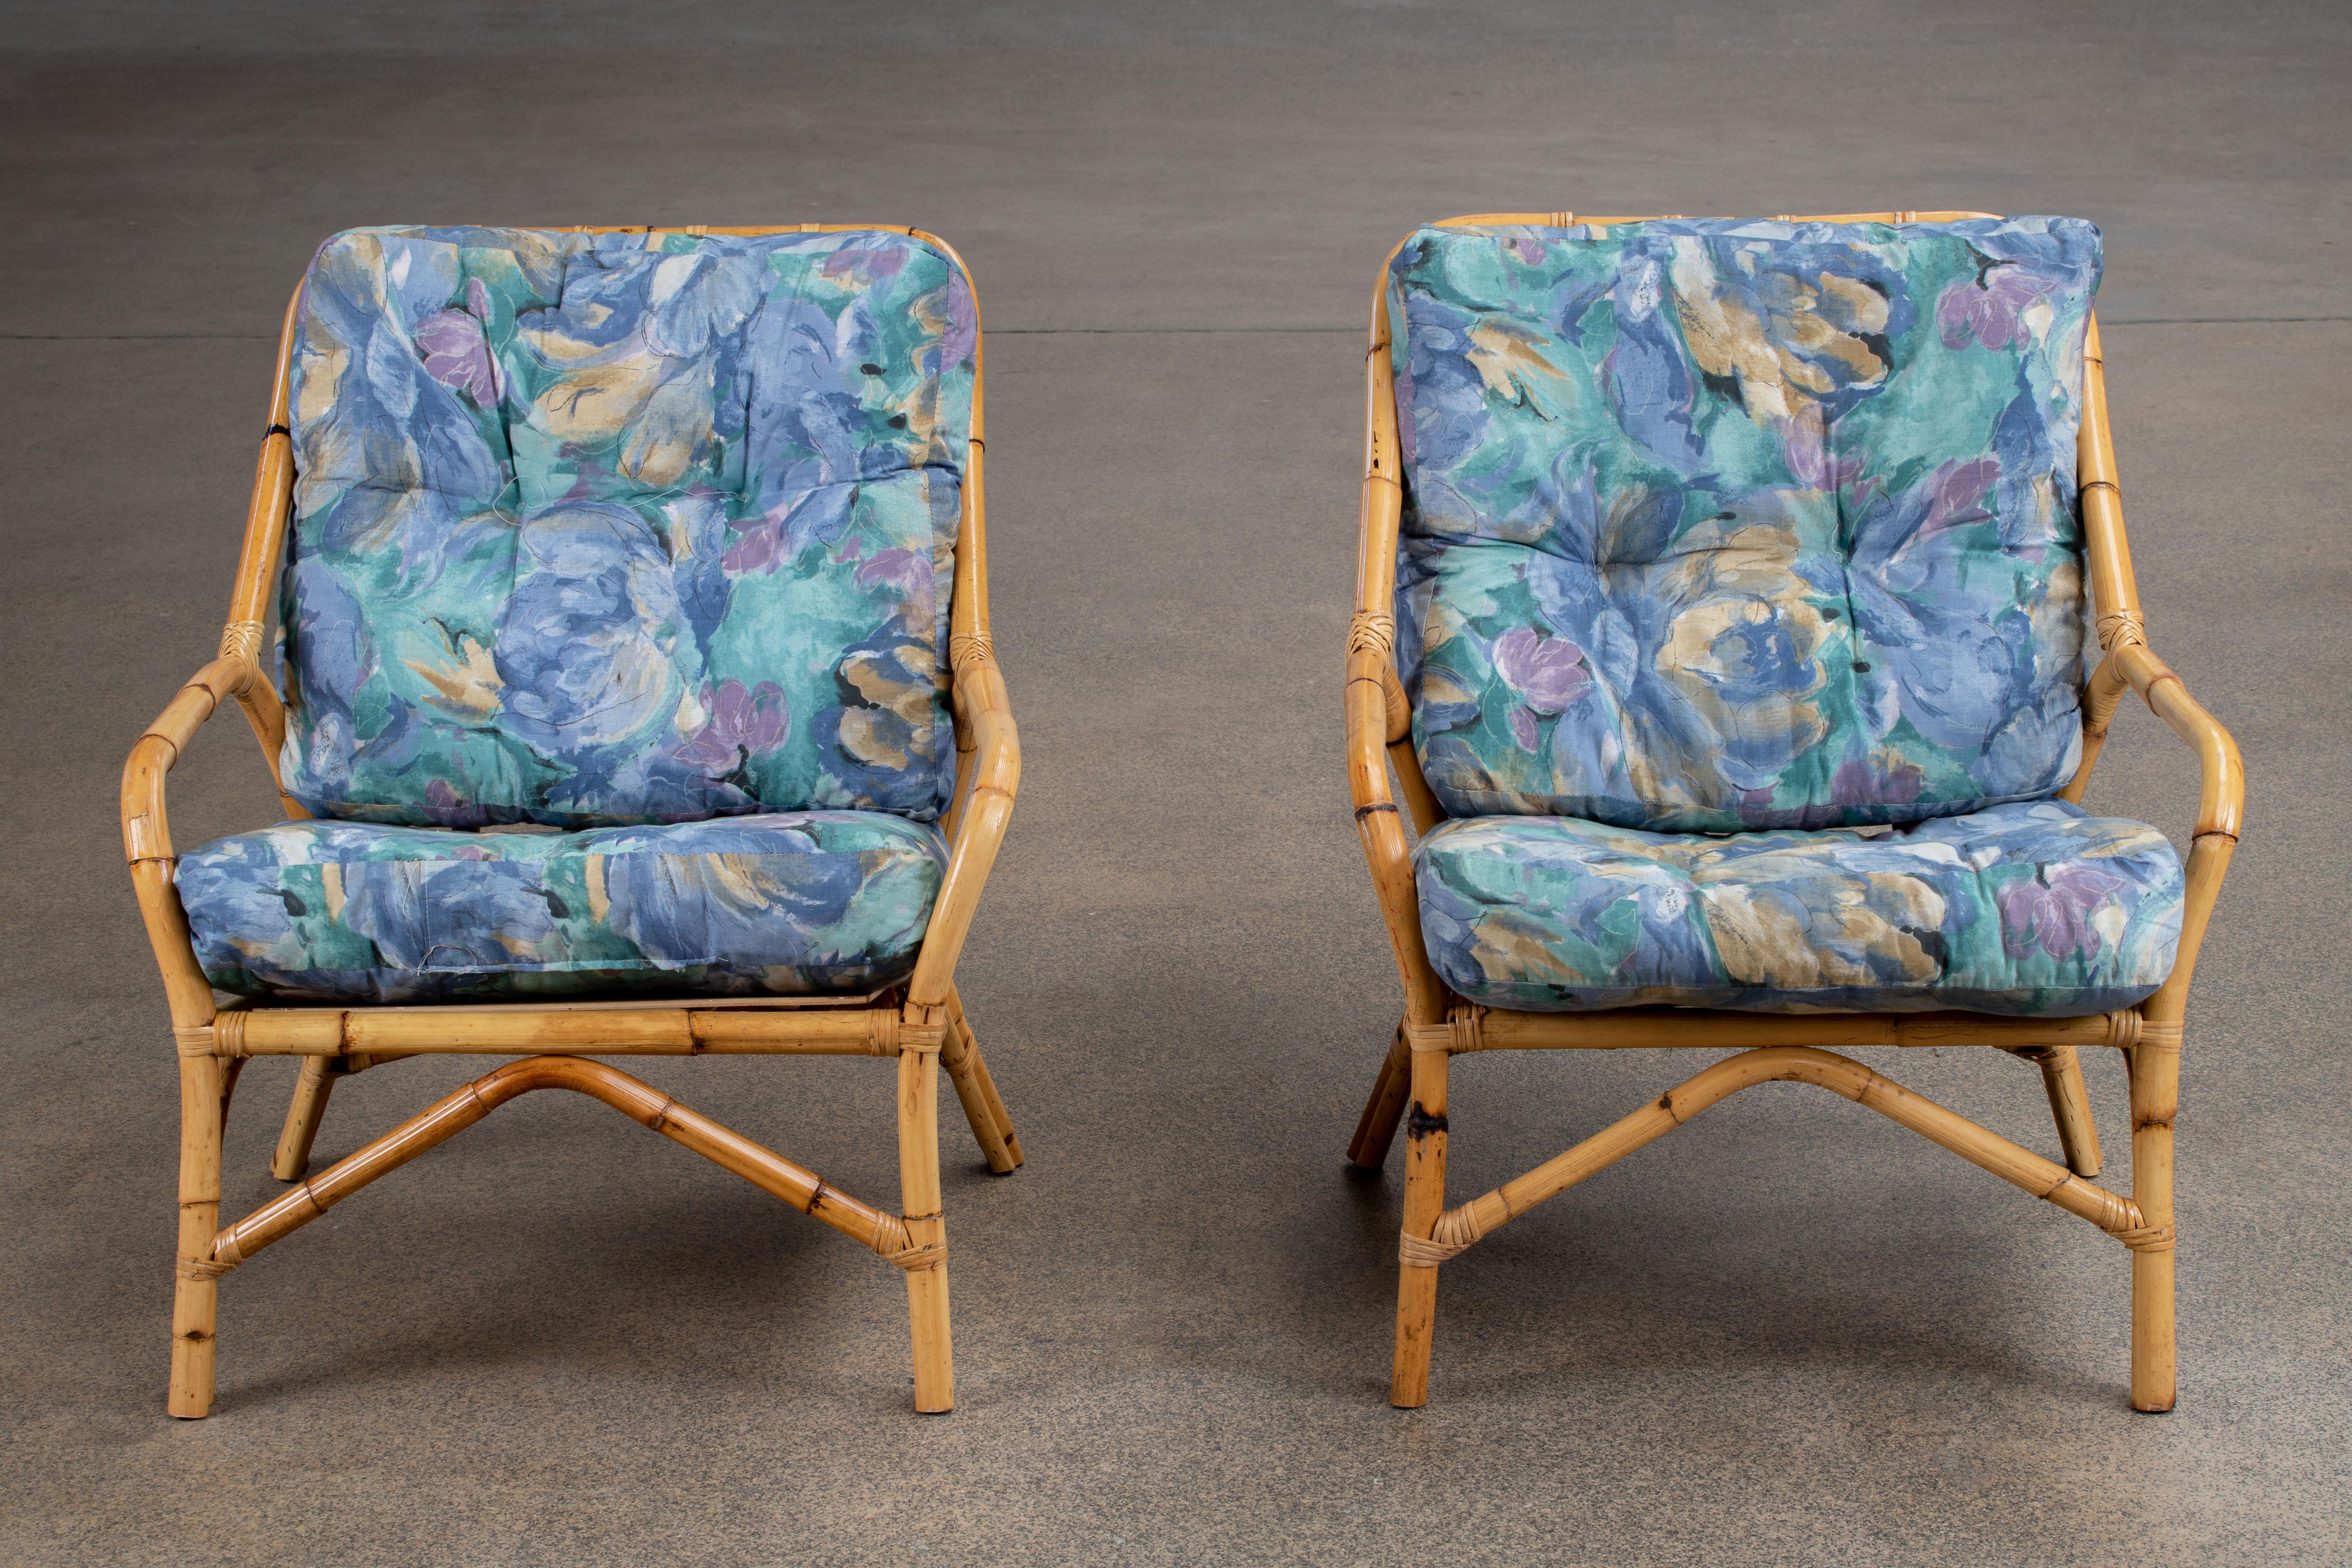 Magnifique paire de chaises longues surdimensionnées en rotin de bambou des années 1970, fabriquées dans le style moderne organique de la Côte d'Azur. Les chaises sont dotées d'un grand cadre en rotin courbé et de coussins bleu soyeux. Très